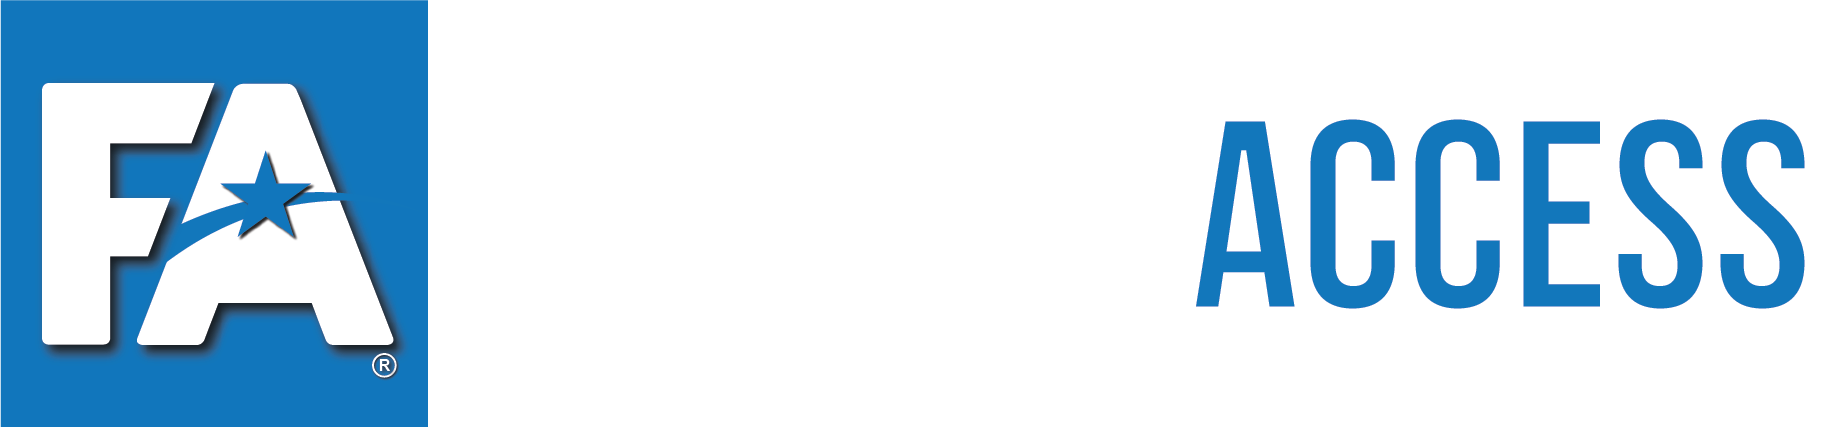 Federal Access Program Logo